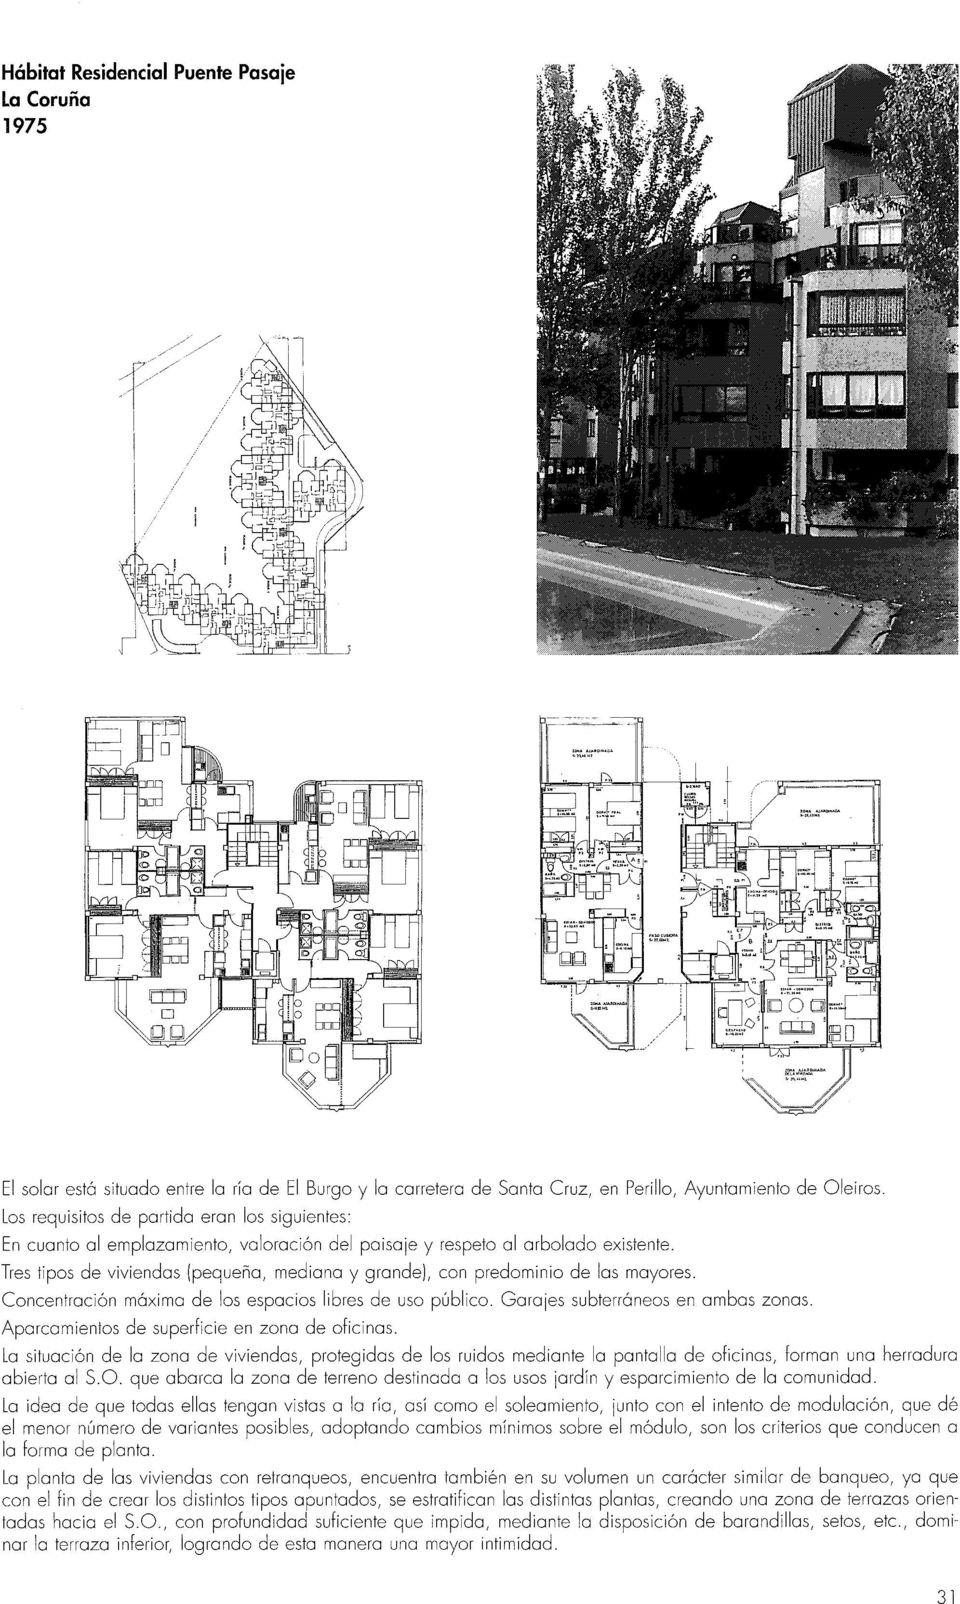 Tres tipos de viviendas (pequeño, mediano y grande), con predominio de los mayores. Concentración máximo de los espacios libres de uso público. Garajes subterráneos en ambos zonas.